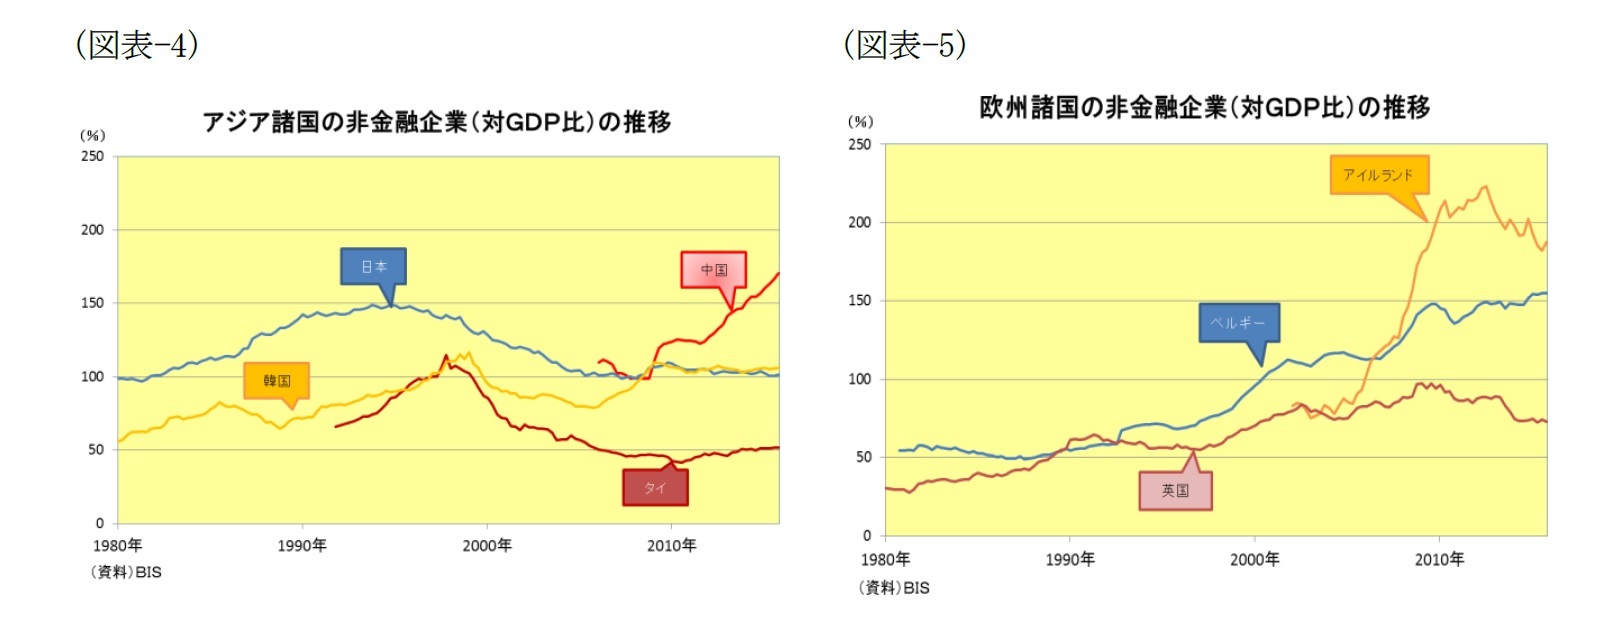 （図表-4）アジア諸国の非金融企業（対GDP比）の推移/（図表-5）欧州諸国の非金融企業（対GDP比）の推移